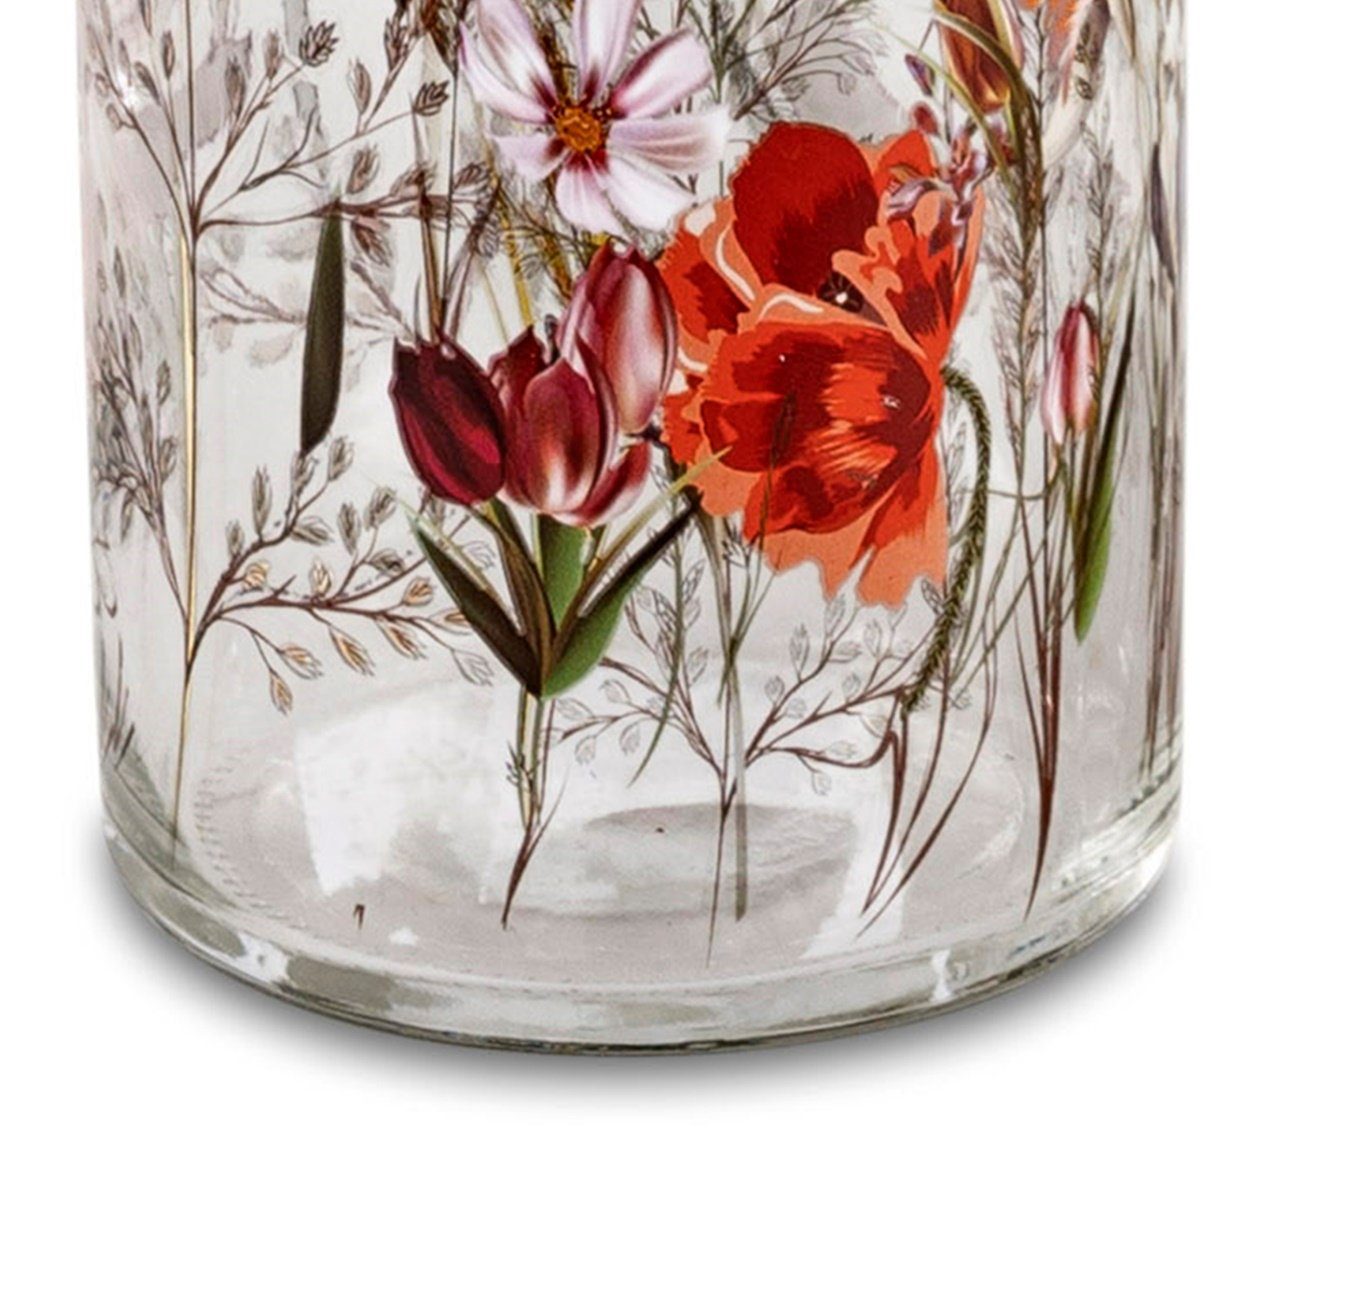 dekojohnson Dekovase Blumenvase 20cm (Keines) Glasvase Deko-Vase-Flasche